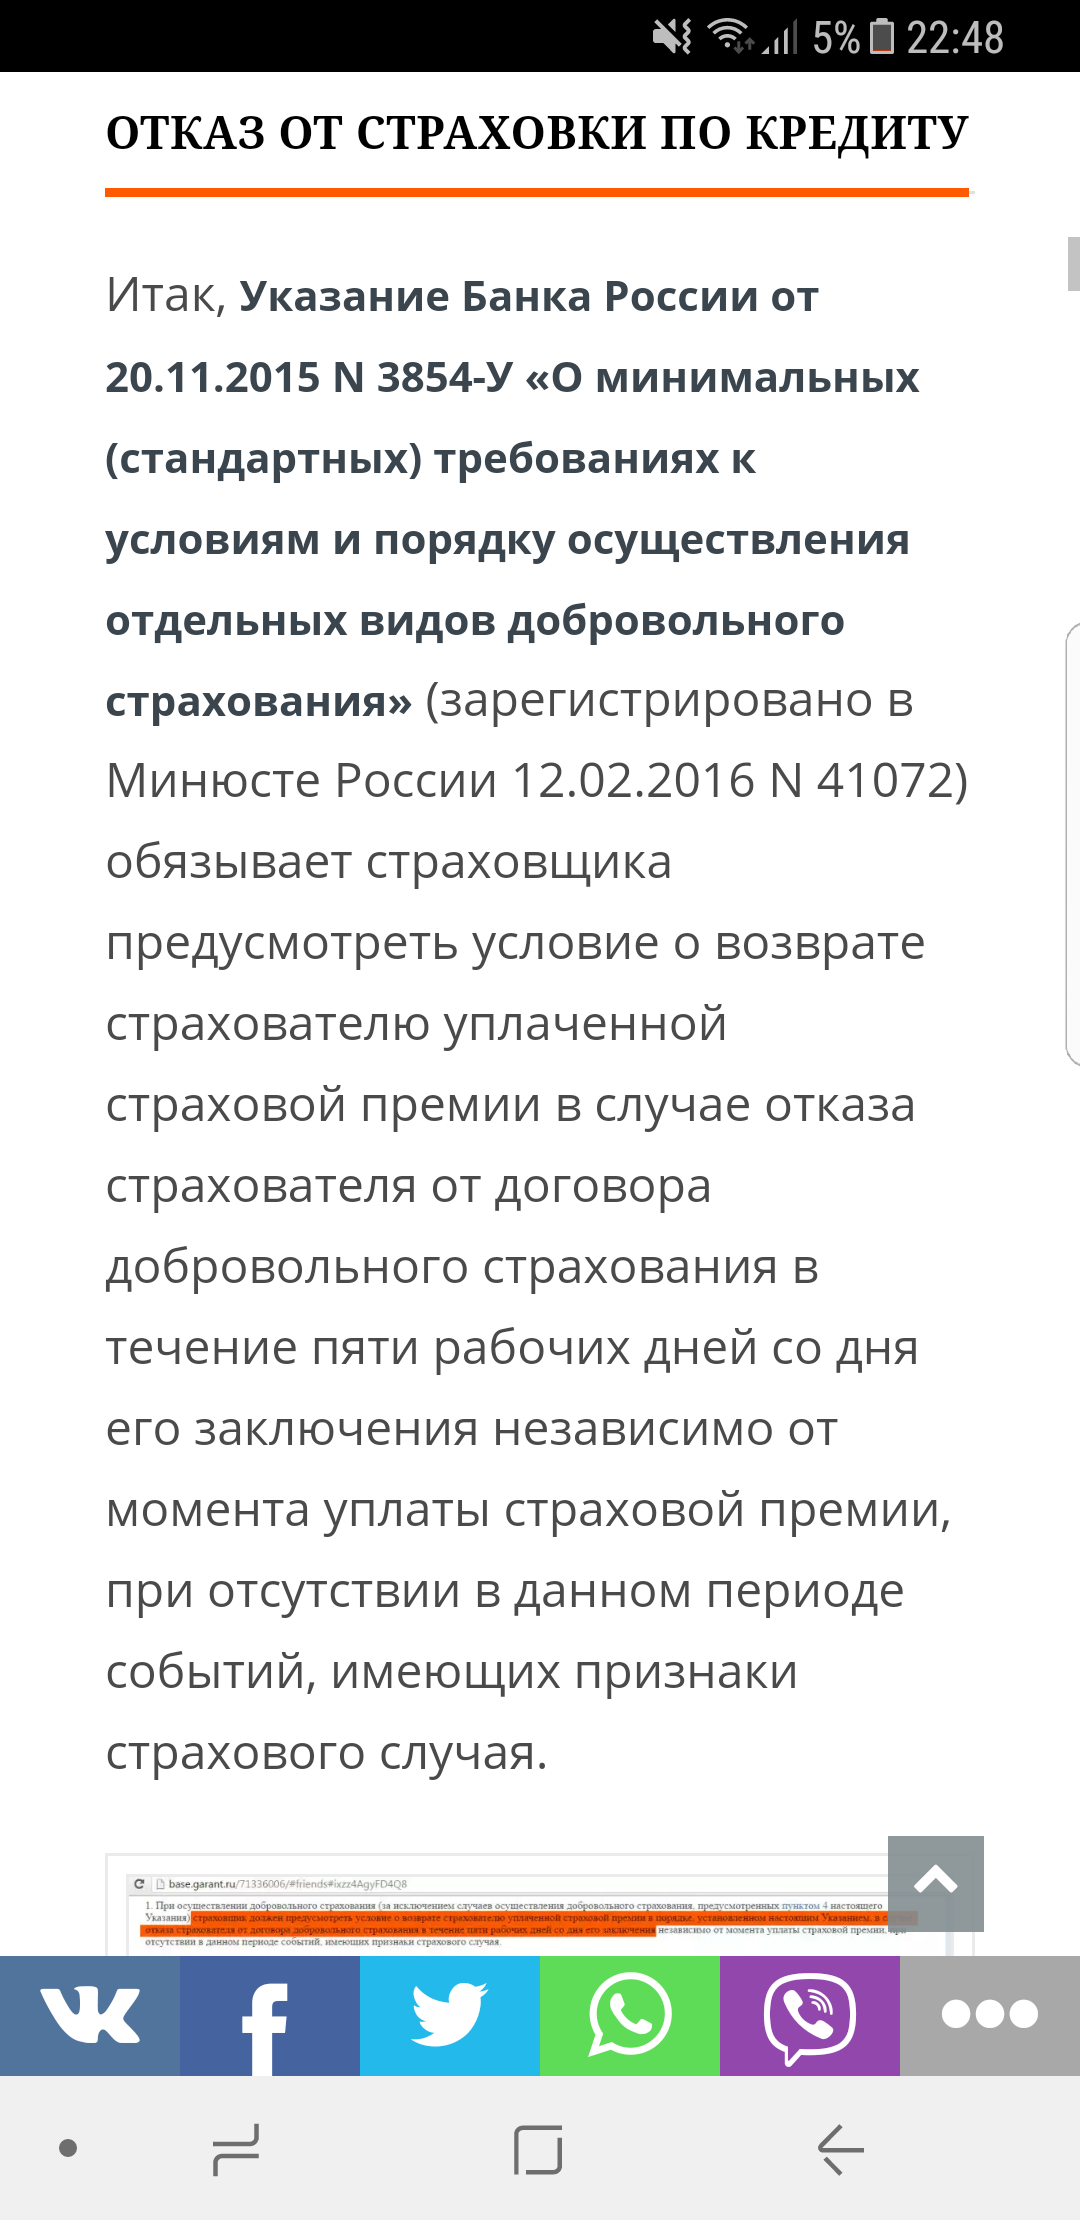 Саяногорск Инфо - screenshot_20170622-224806.png, Скачано: 476